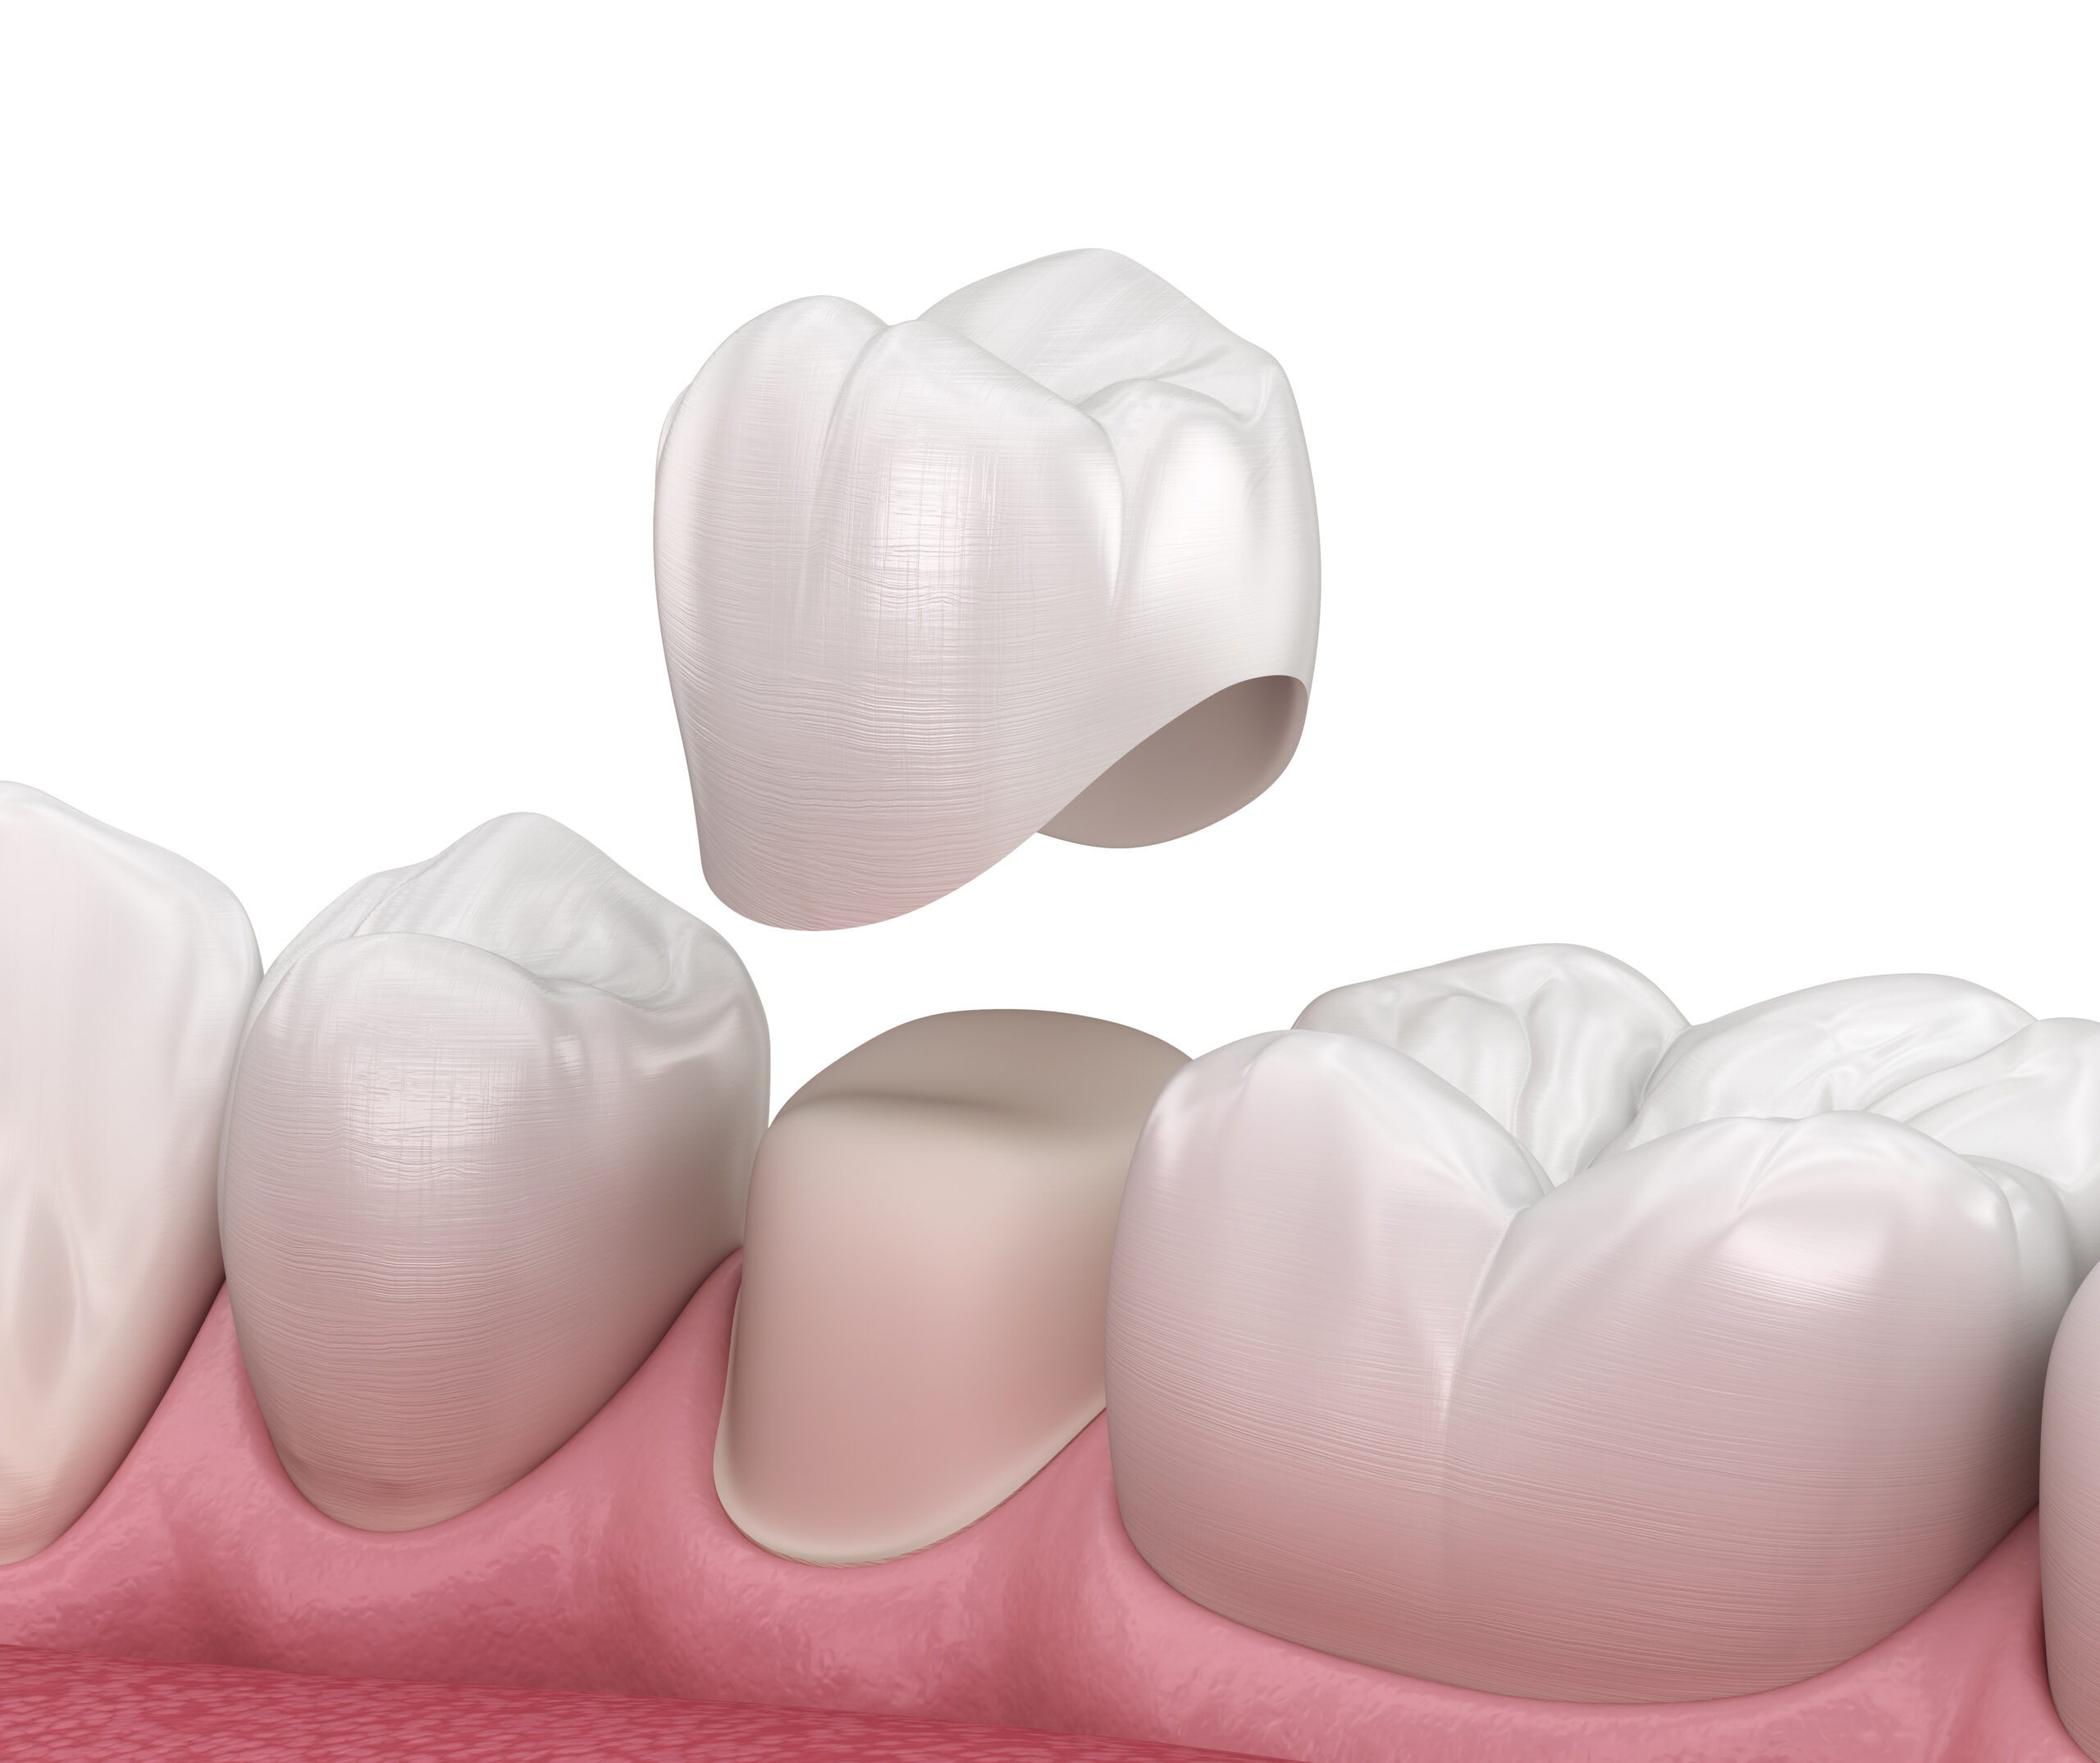 White Esthetic crowns in Pediatric dentistry